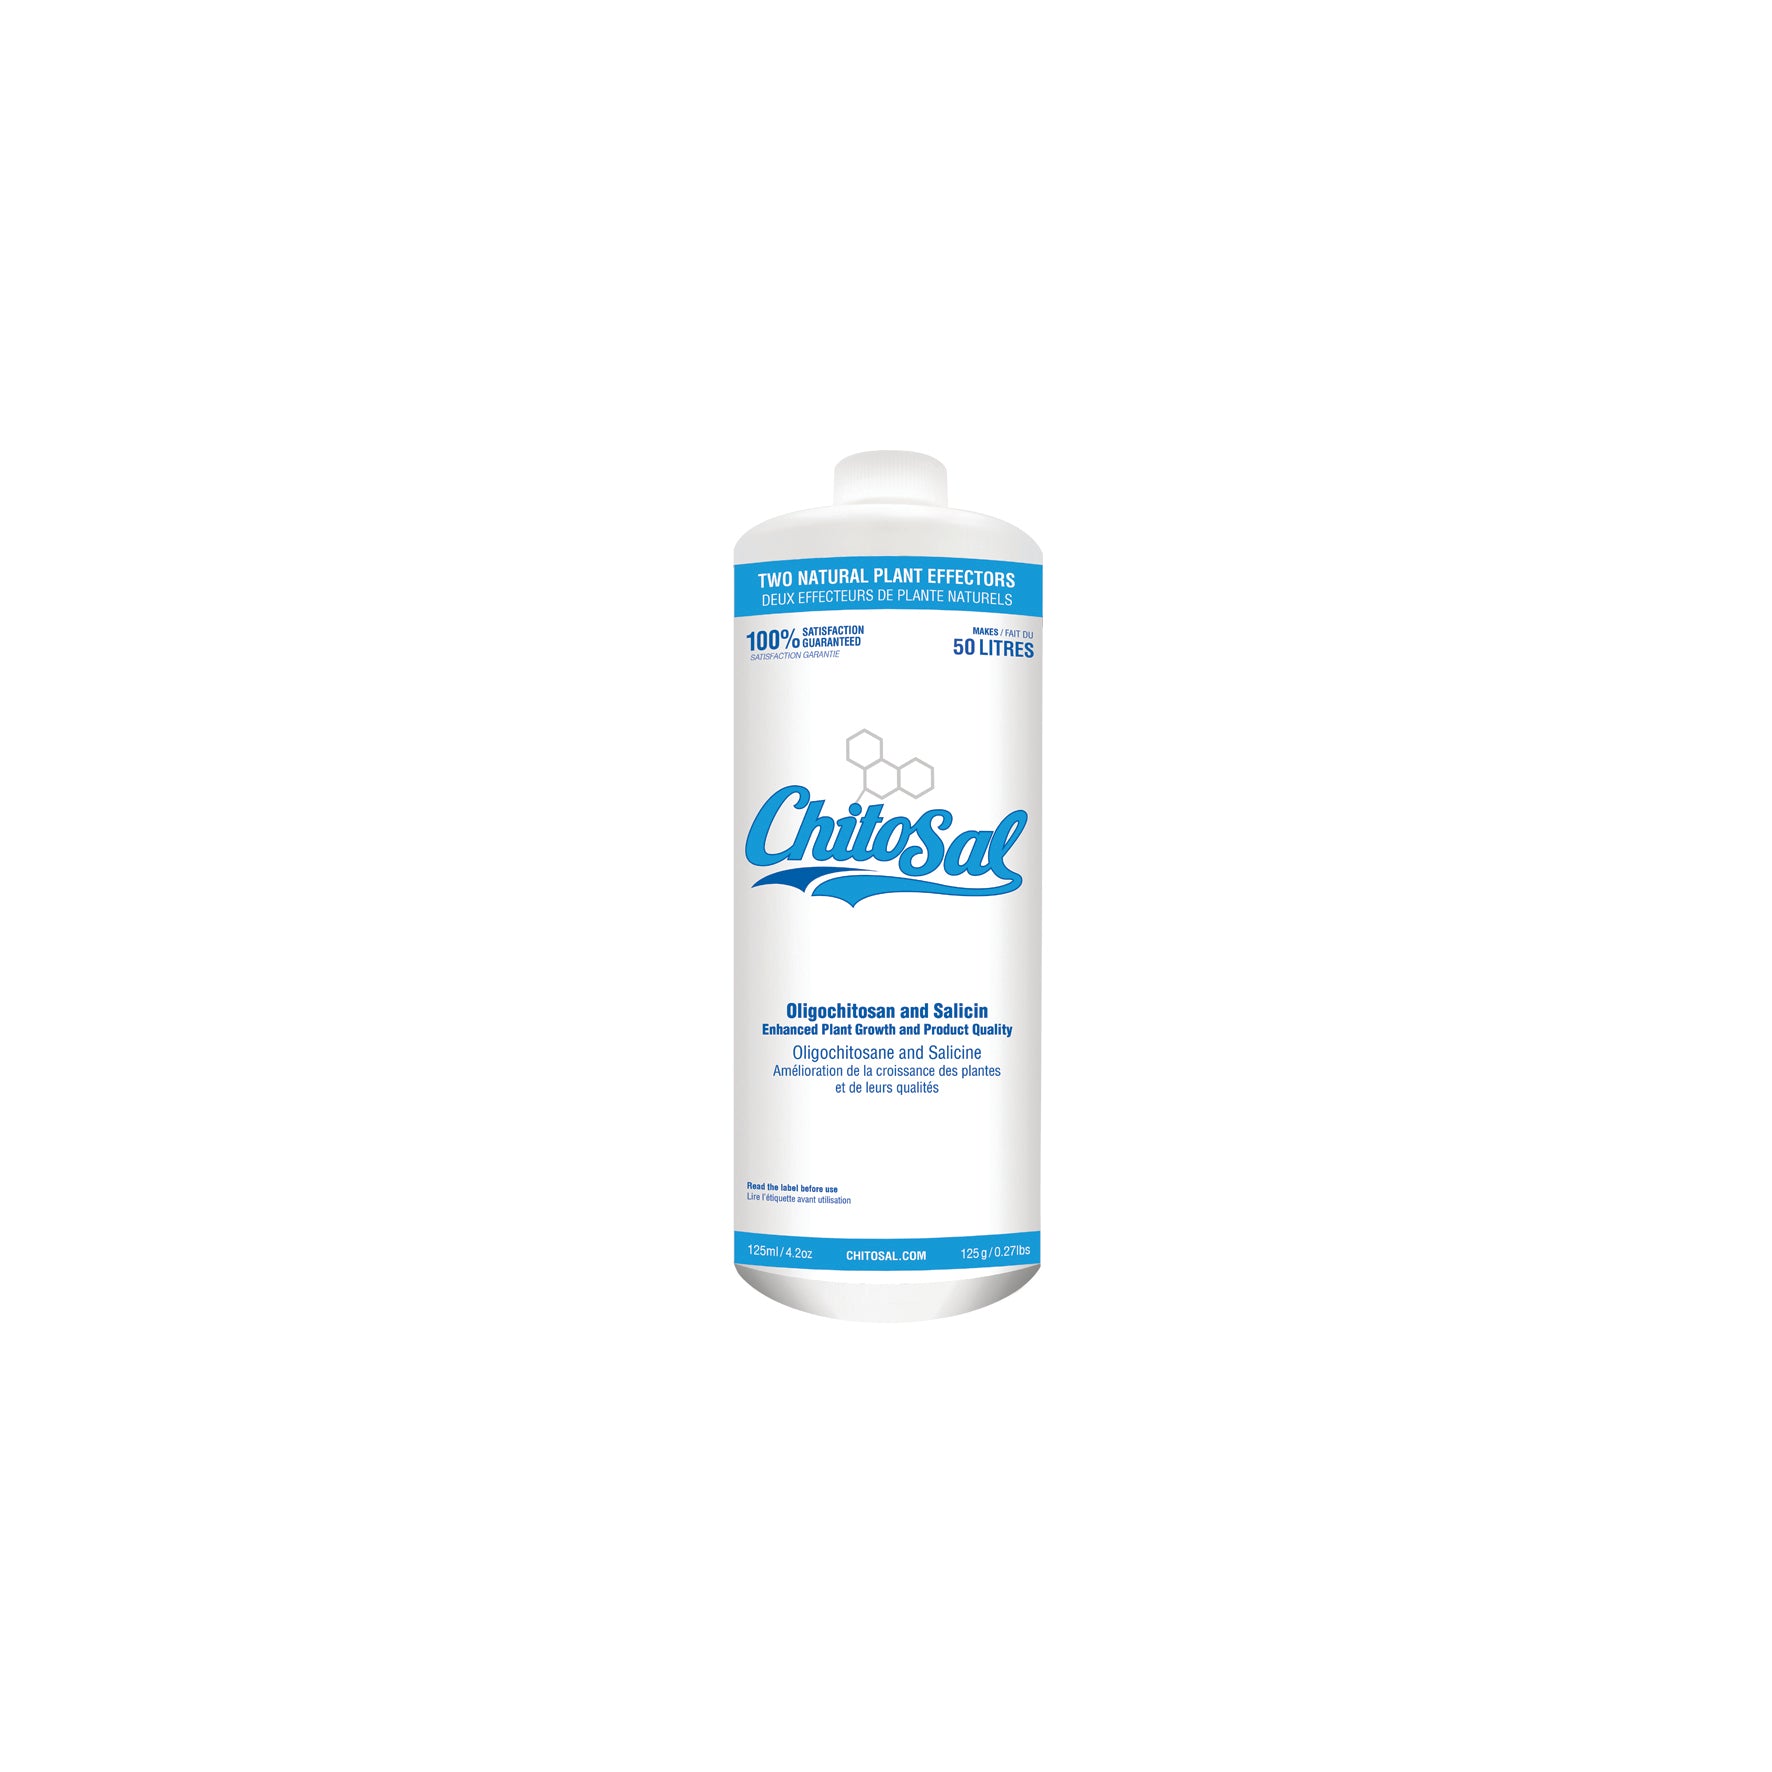 Product Image:Chitosal - Oligochitosan and Salicin